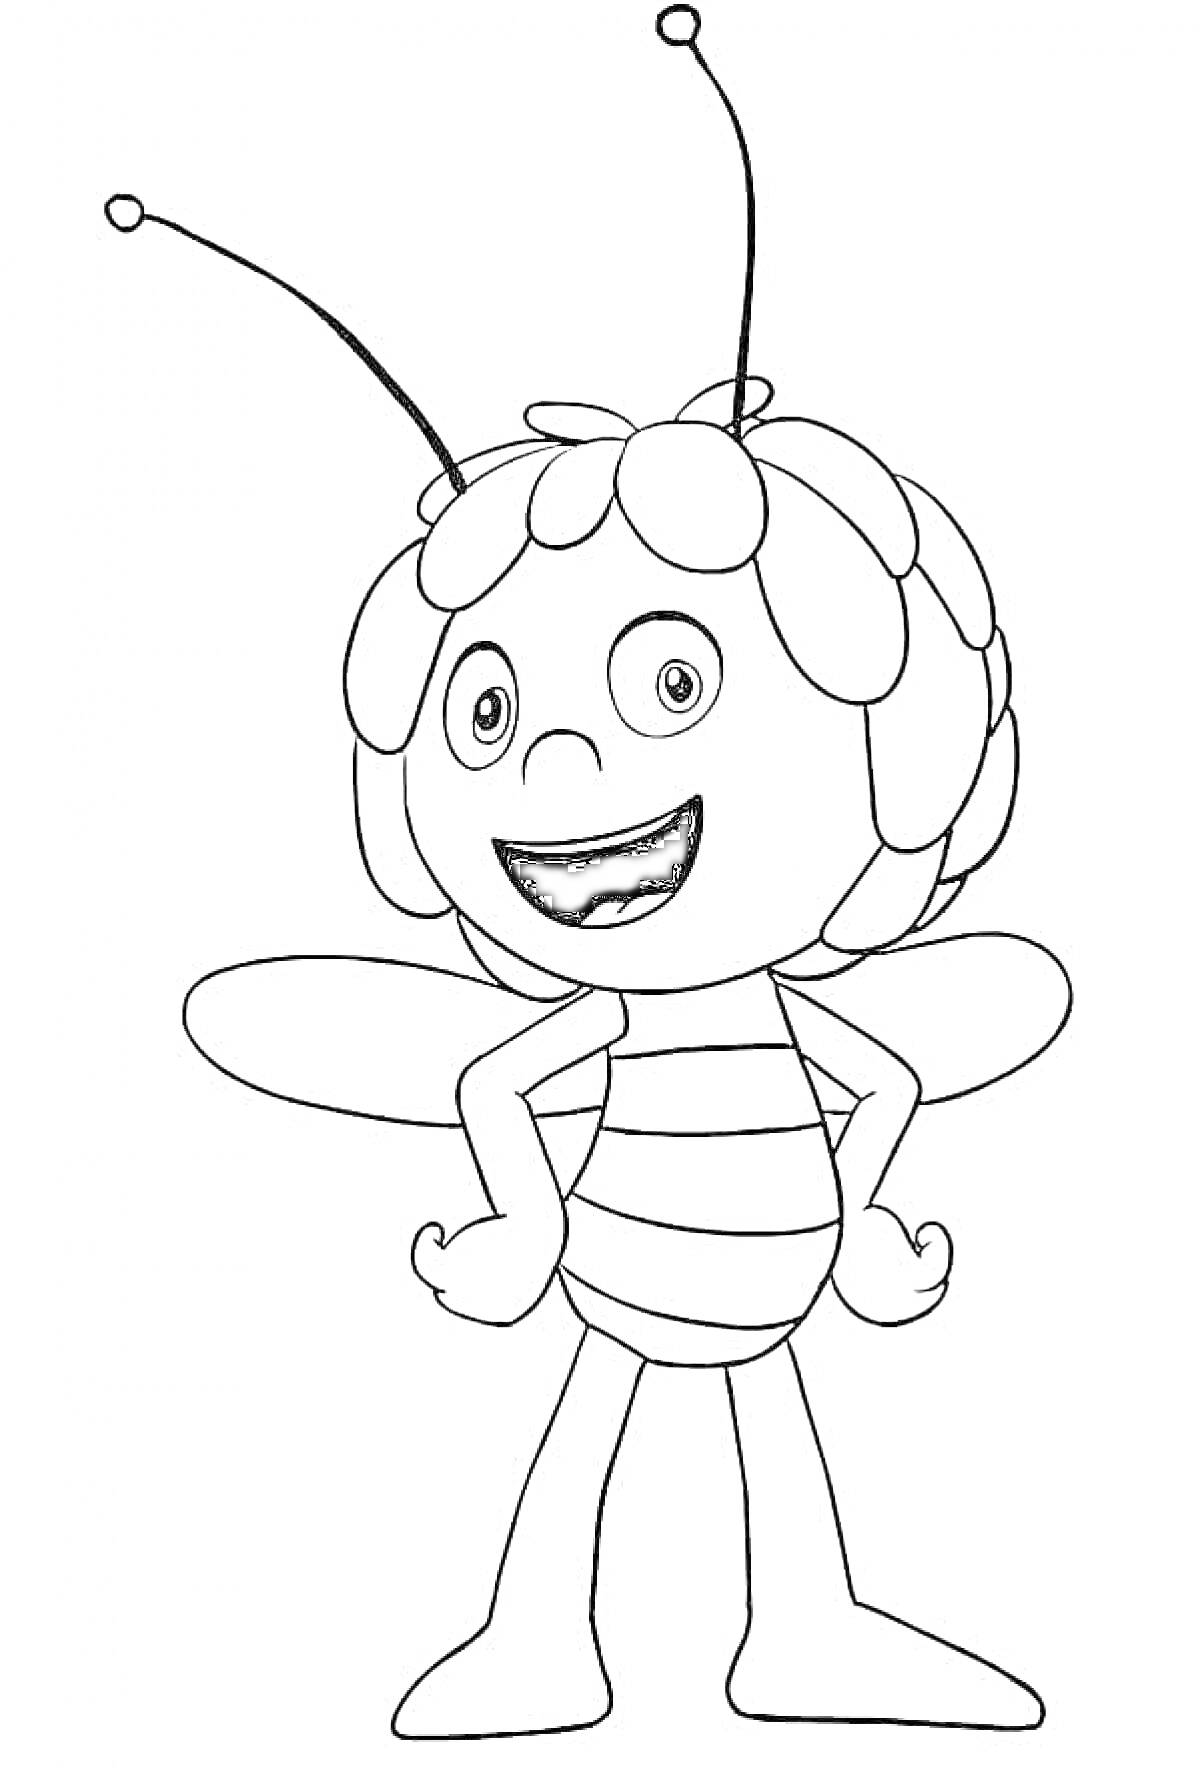 Раскраска Рисунок пчелки с улыбкой, с двумя антеннами, двумя крылышками и полосатым телом